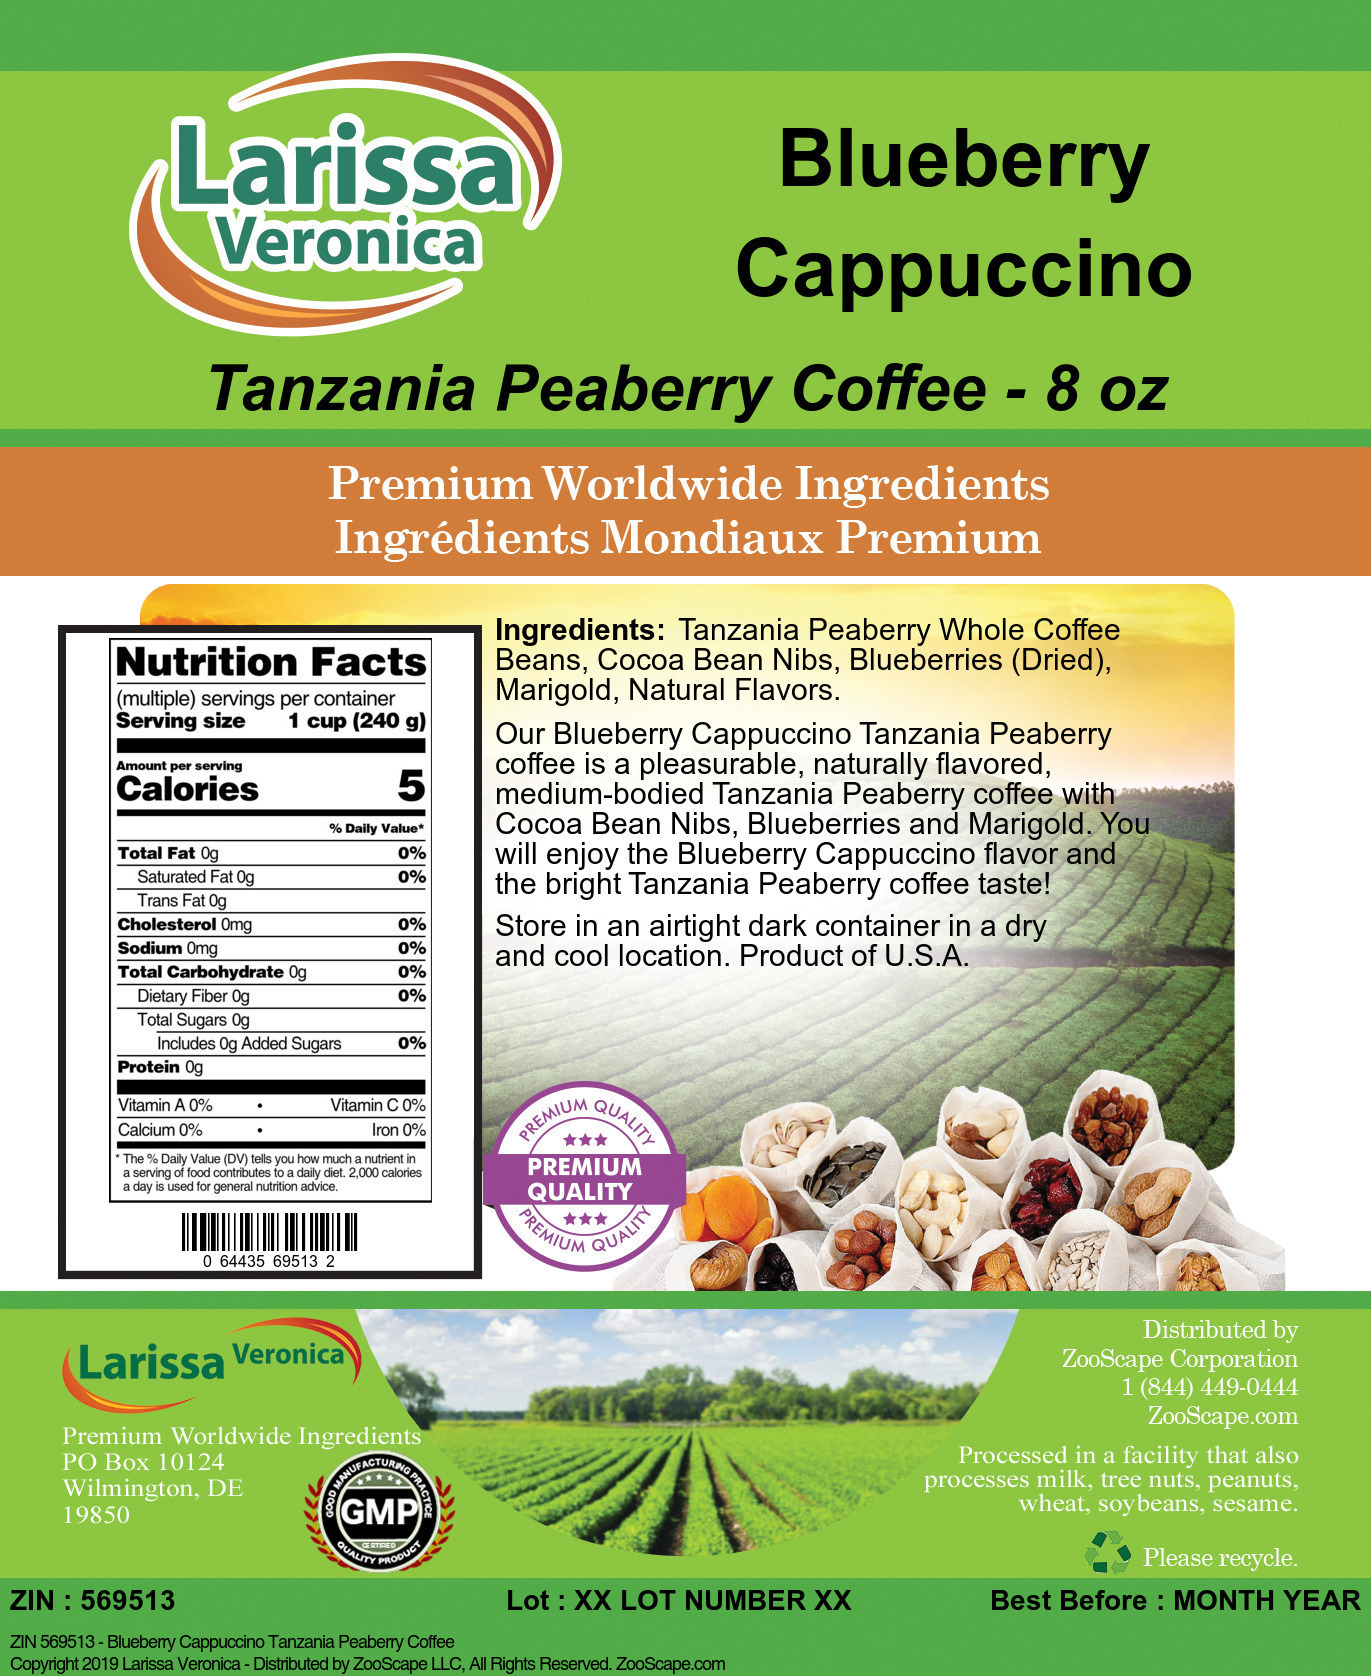 Blueberry Cappuccino Tanzania Peaberry Coffee - Label